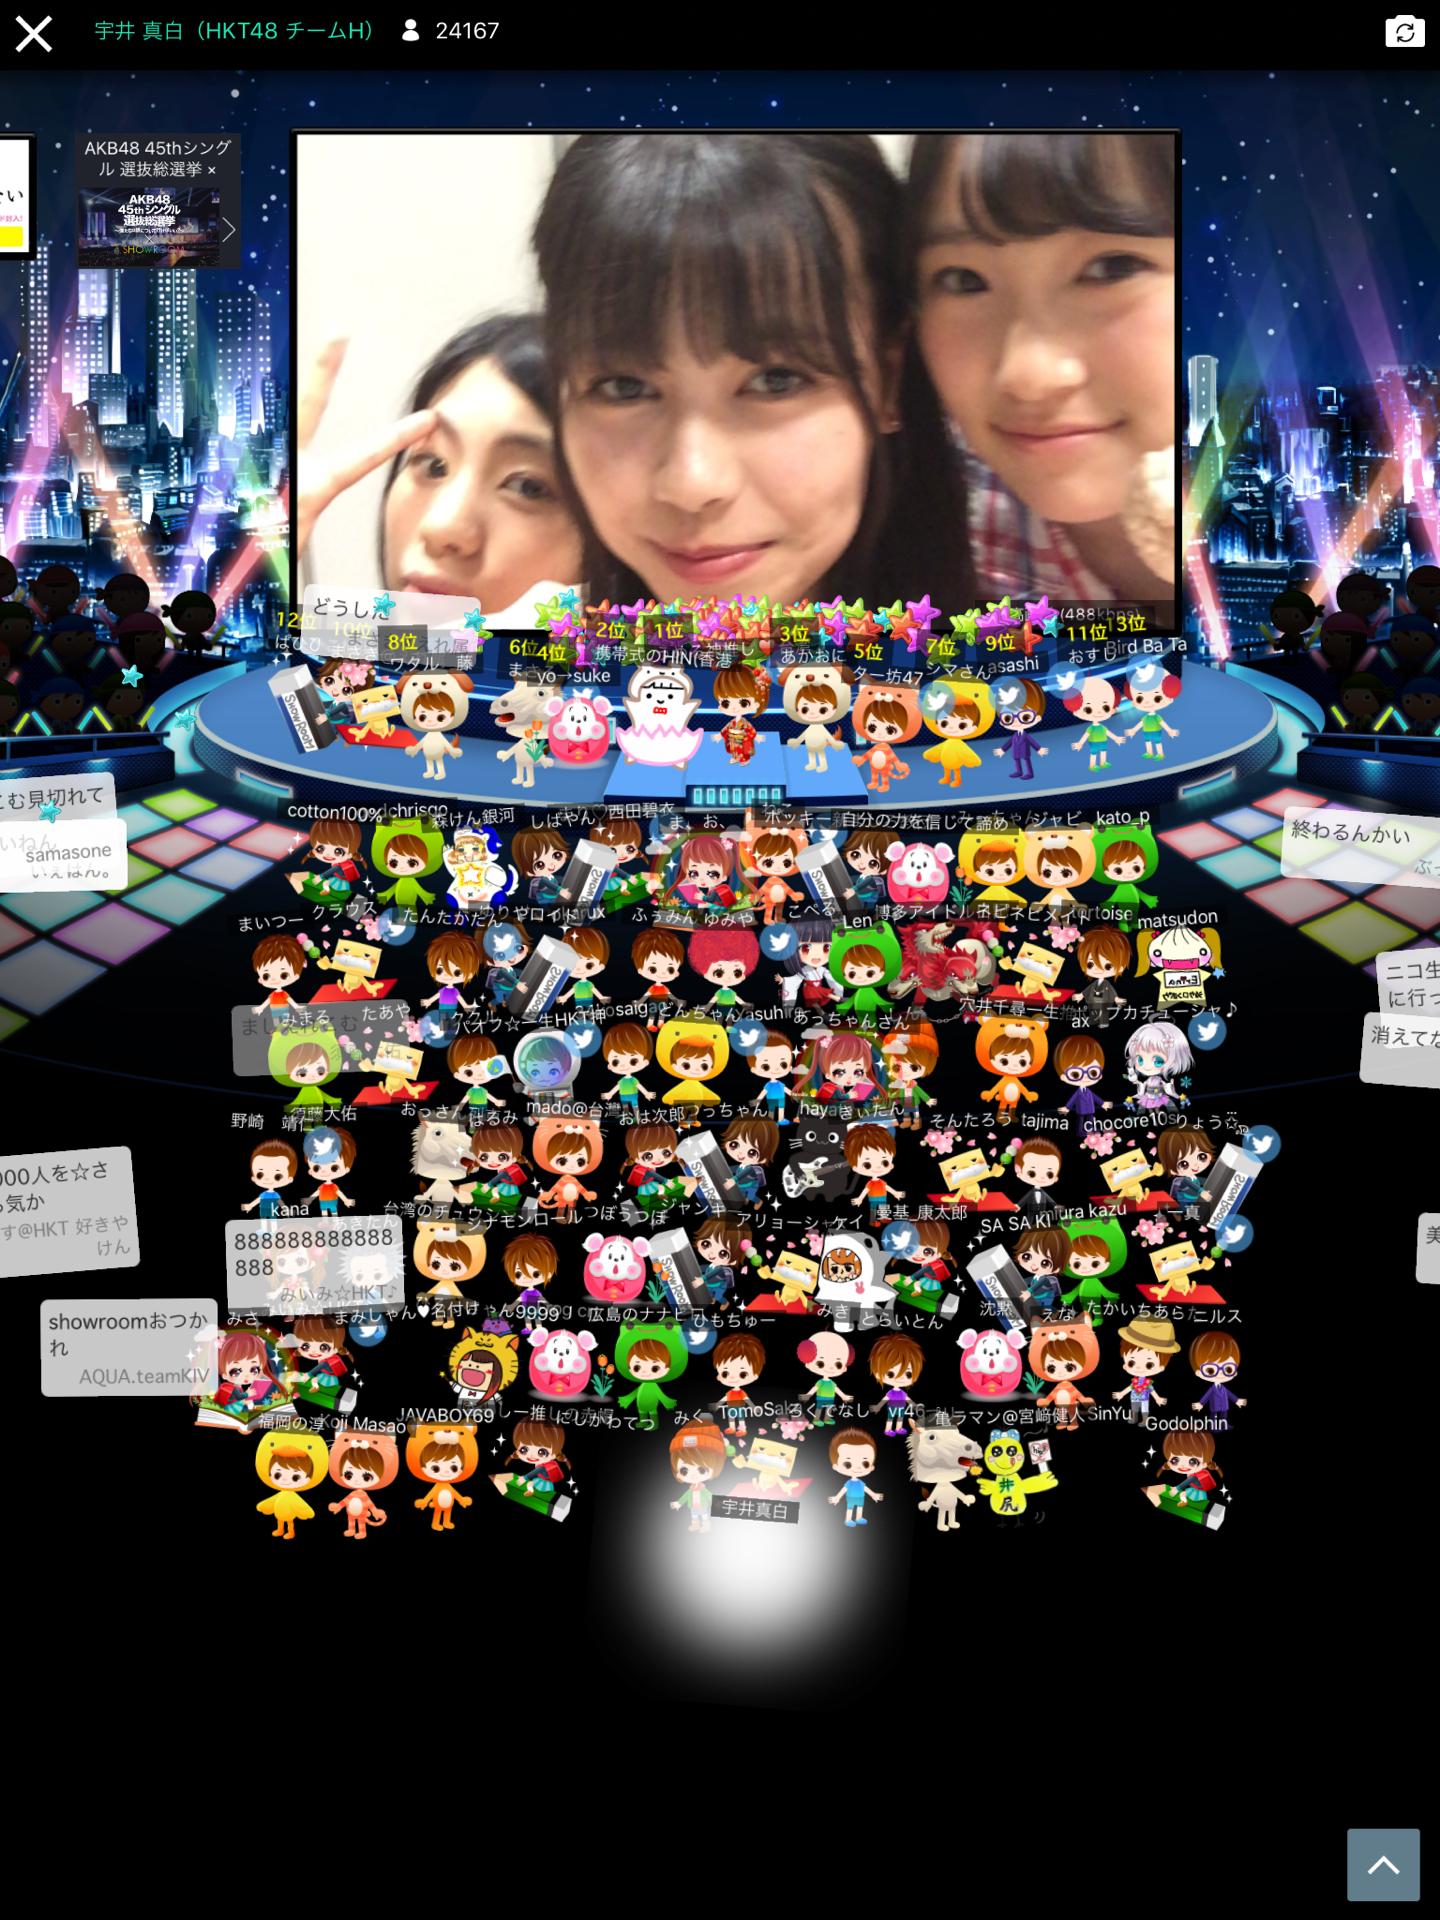 2016N AKB48 44thVOu͂ȂvՔLO刬yHKT48Qz©2ch.net	YouTube>7{ ->摜>534 